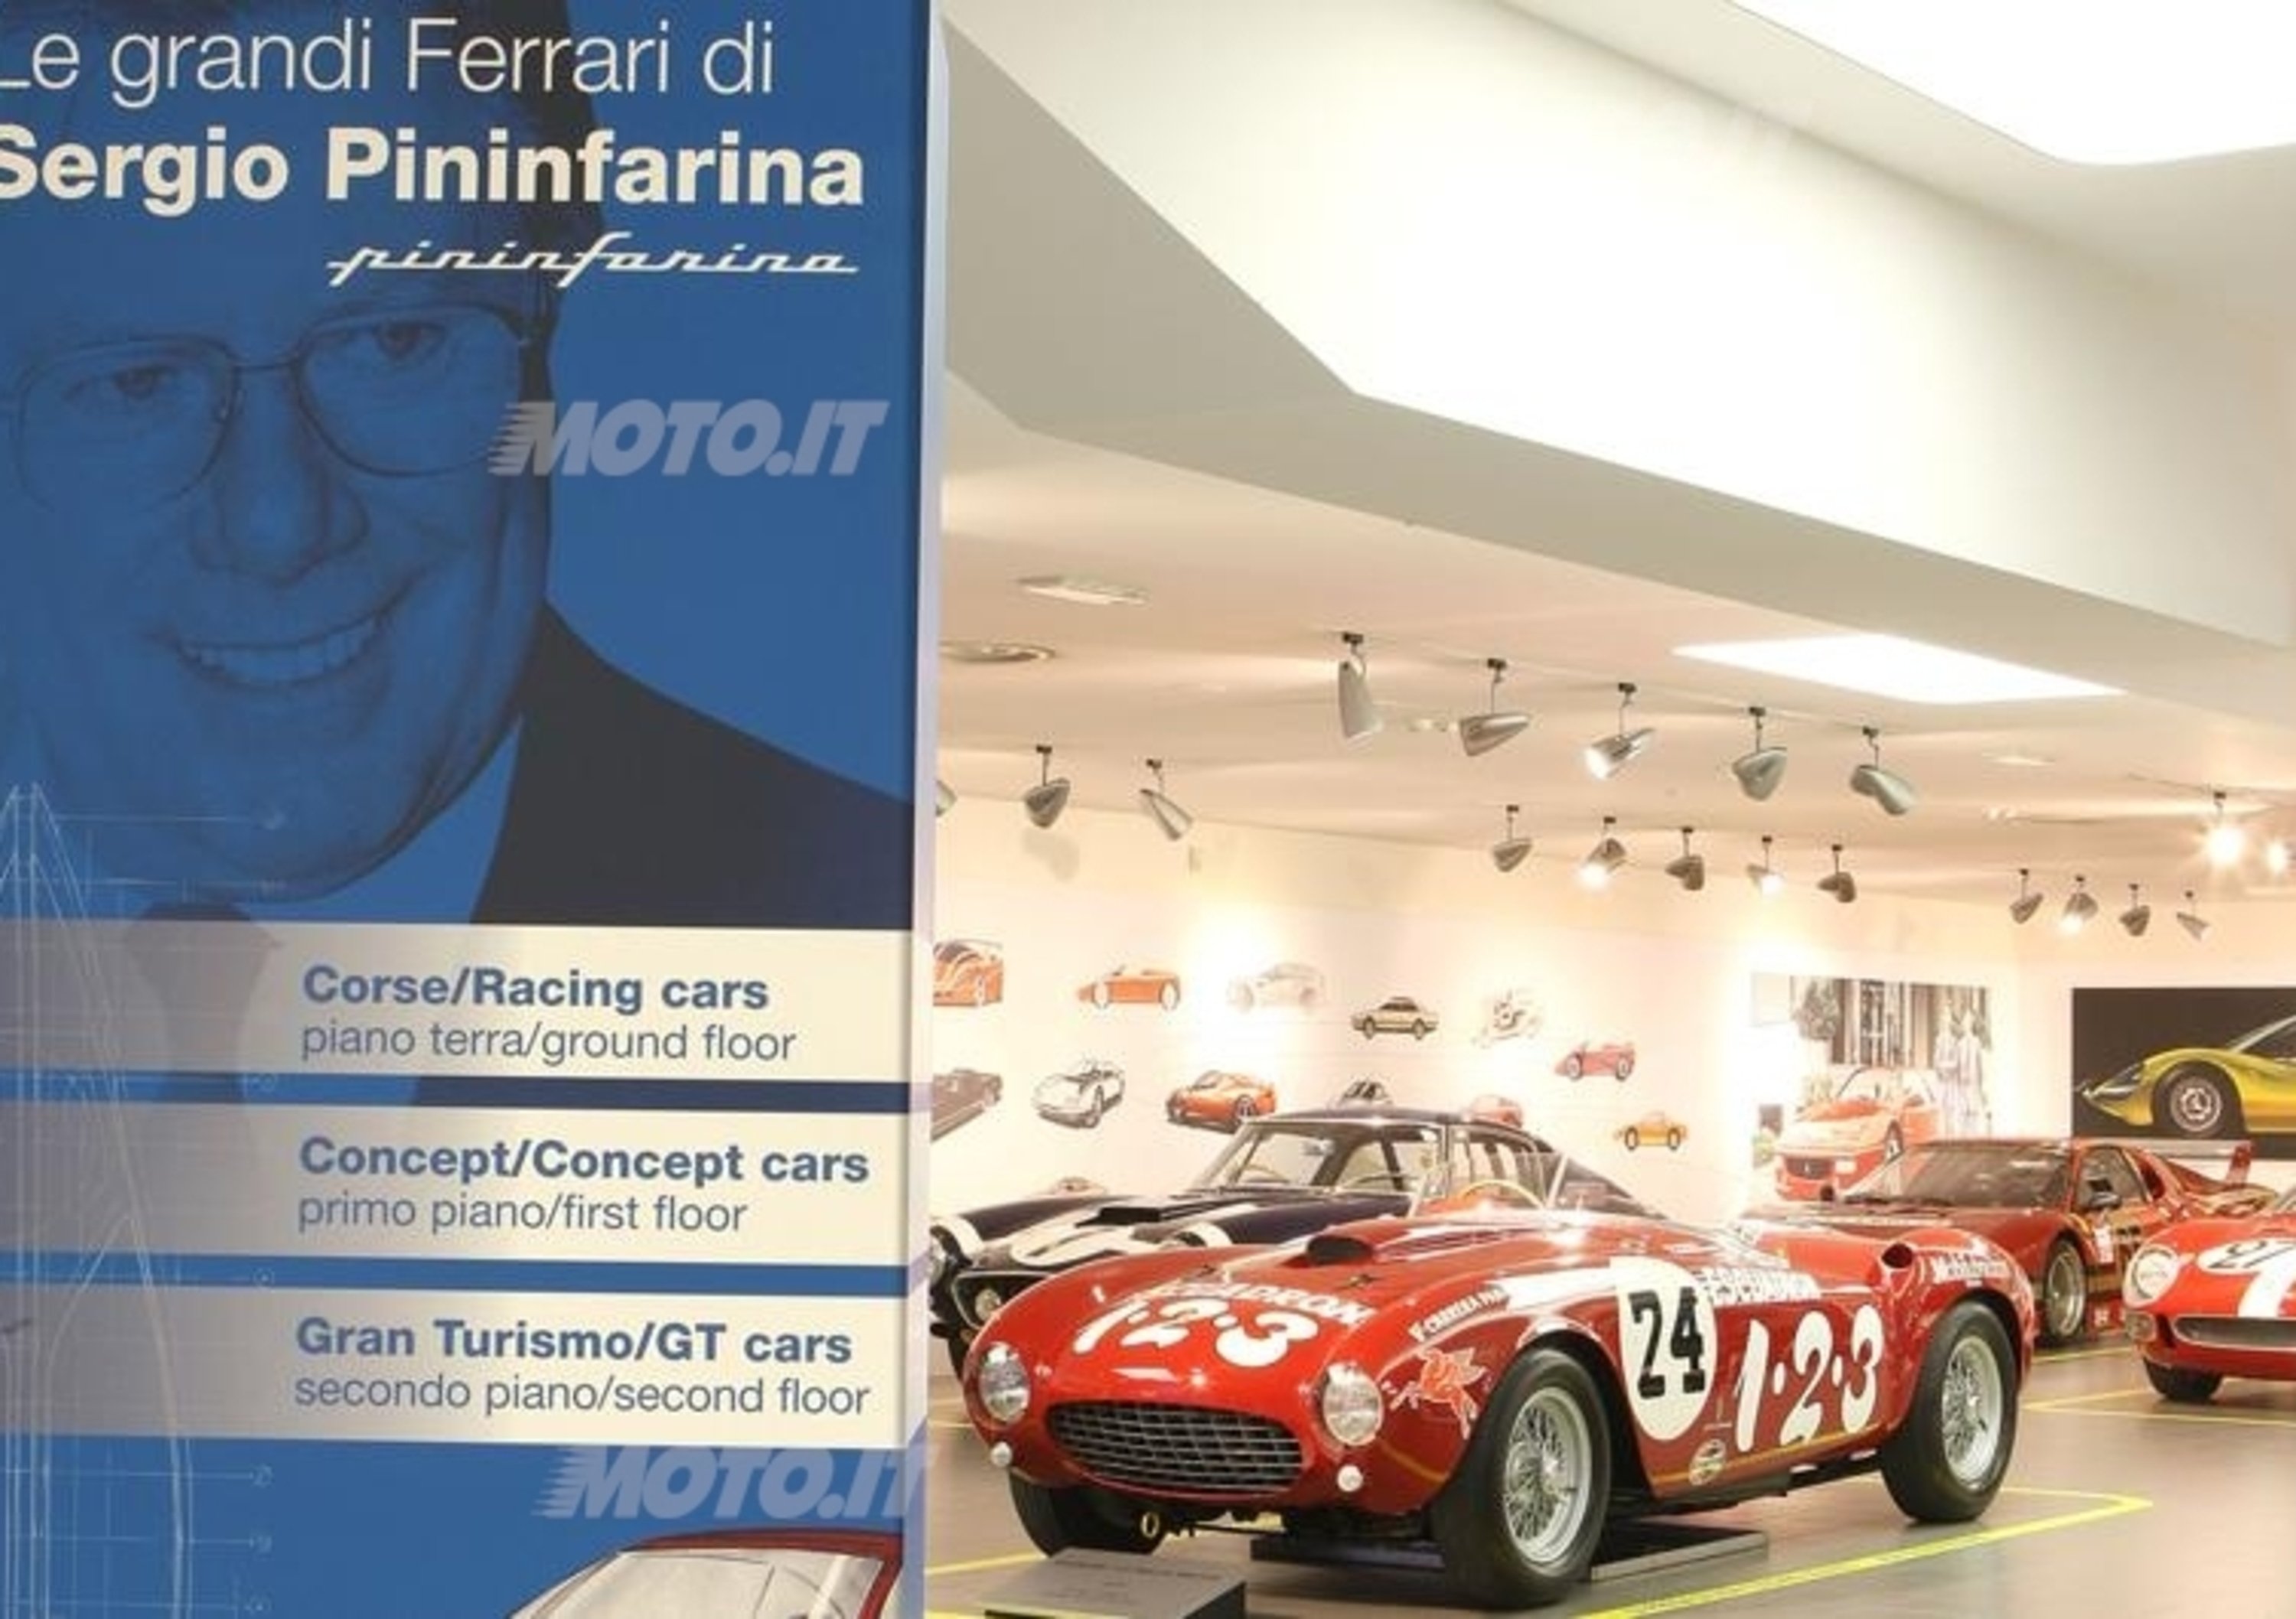 Prorogata fino al 24 febbraio la mostra sulle Ferrari di Sergio Pininfarina